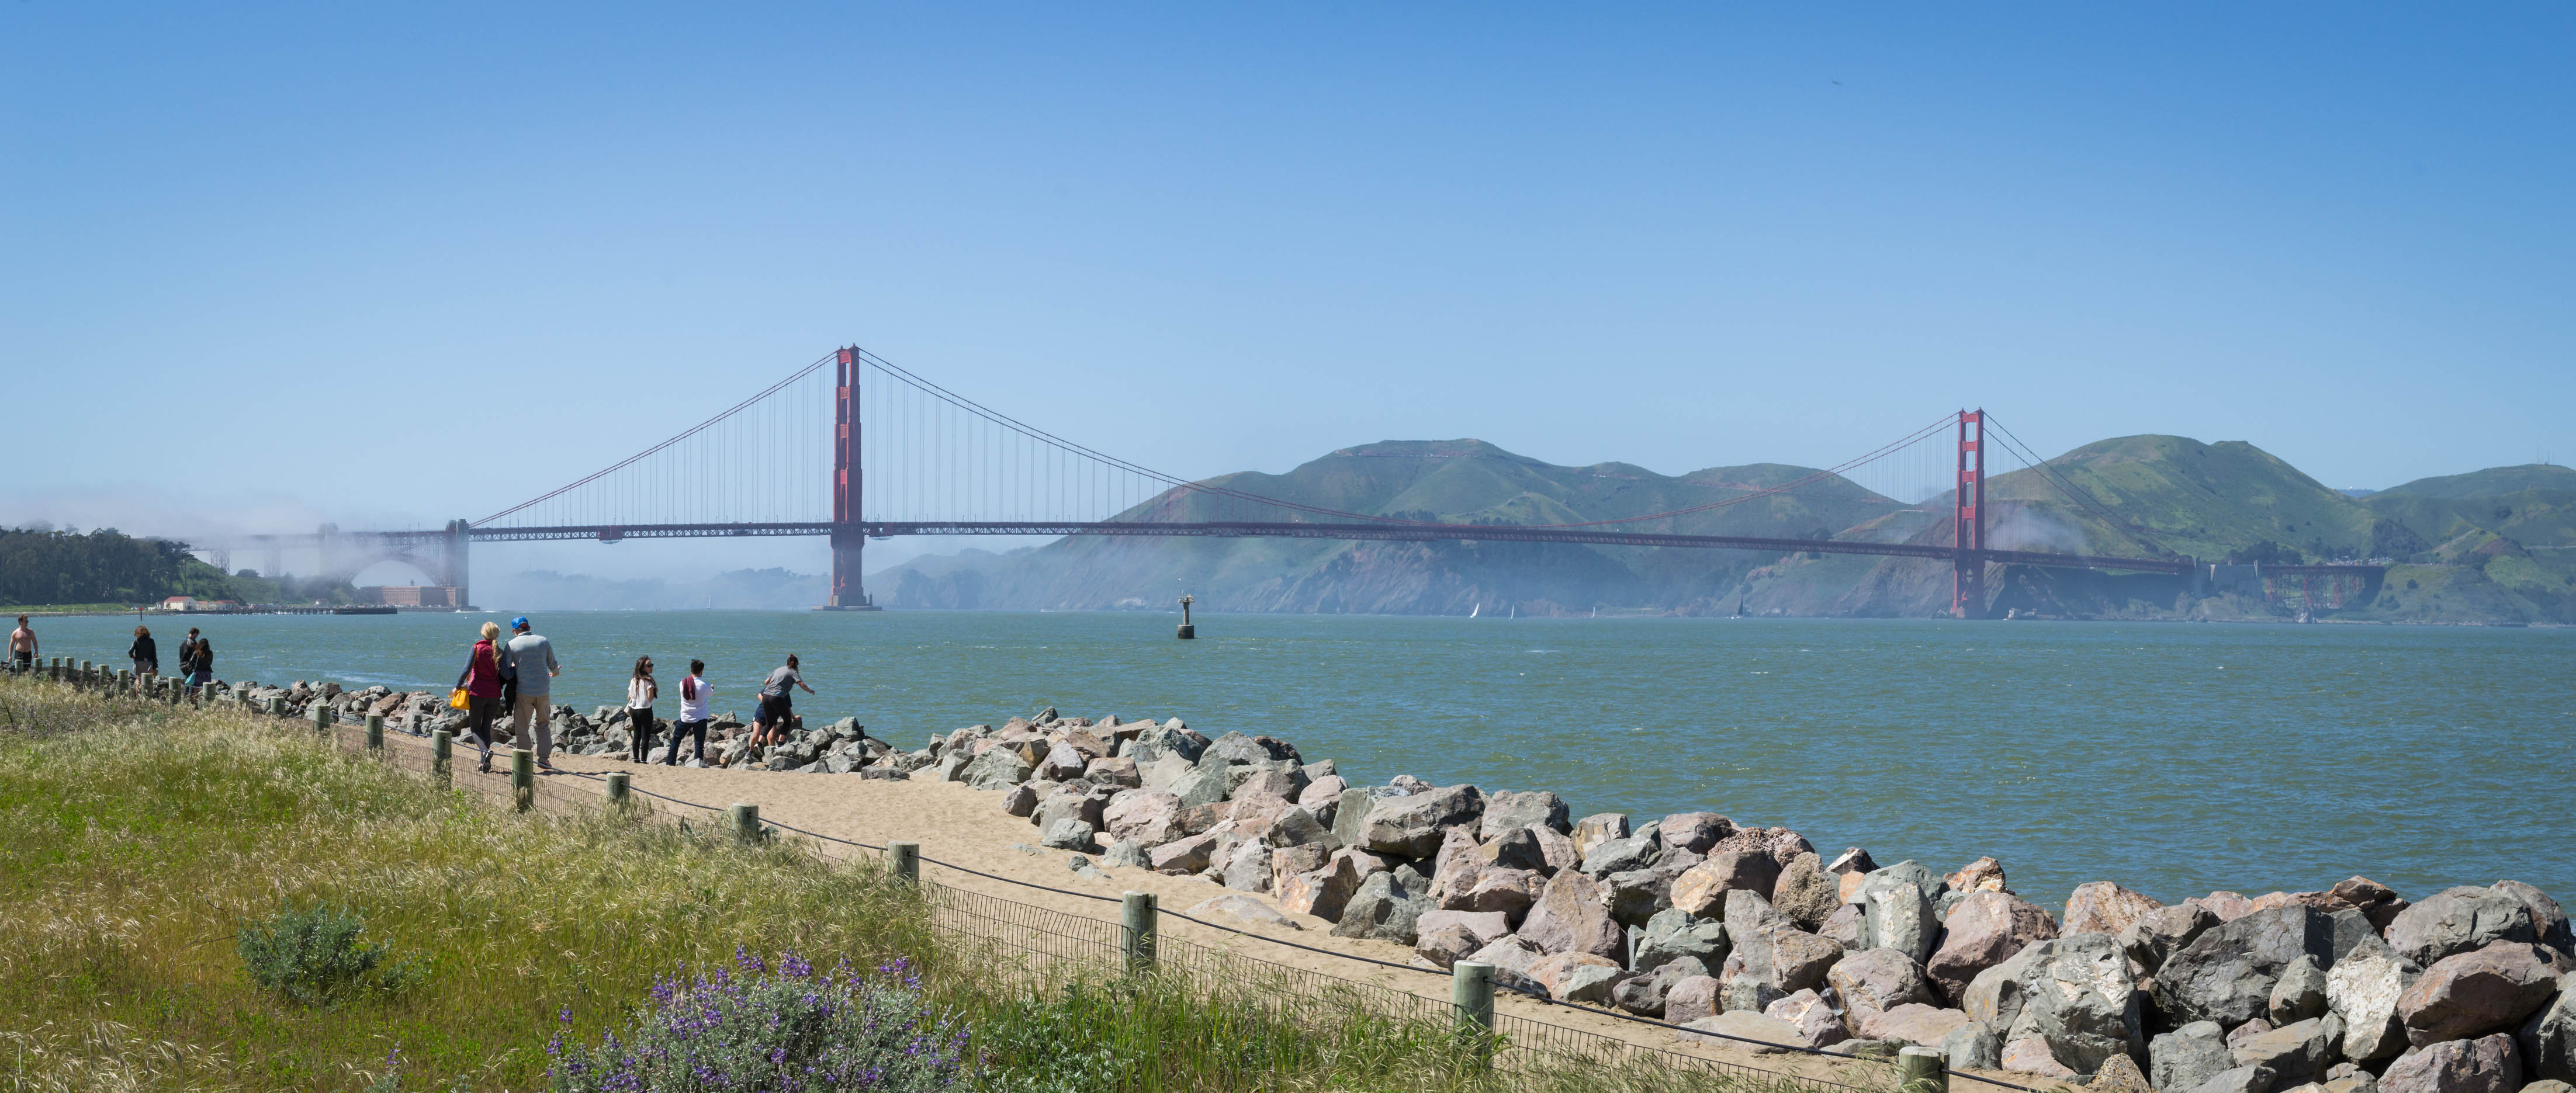 La vue sur le Golden Gate Bridge se précise à mesure qu'on avance